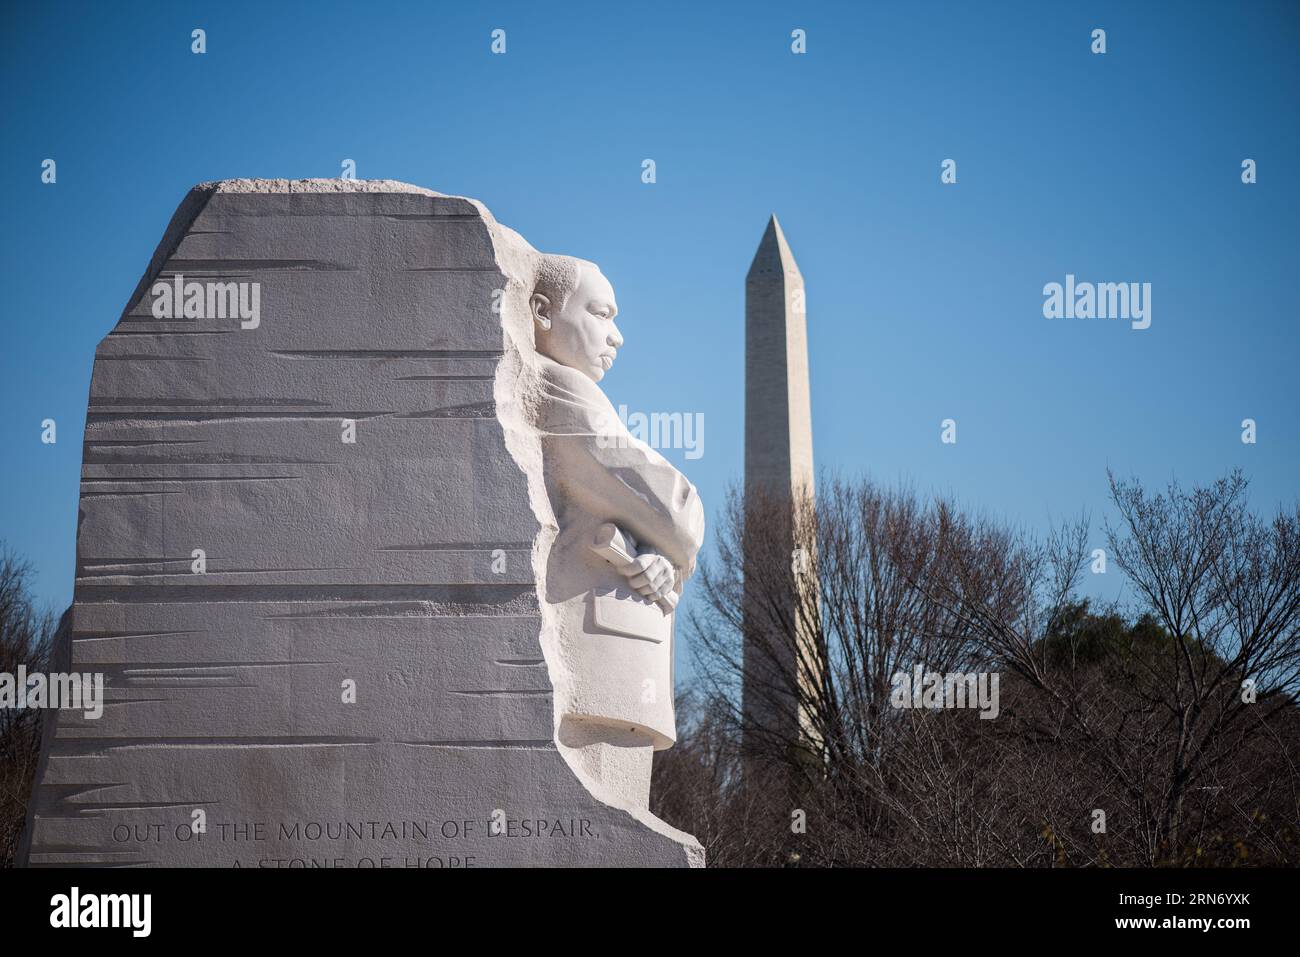 WASHINGTON DC, Vereinigte Staaten – der Martin Luther King Jr. Das Memorial erinnert an das beständige Erbe des Bürgerrechtlers. Das Denkmal, das sich am Tidal Basin der National Mall befindet, erinnert an Dr. Kings Beiträge zur amerikanischen Bürgerrechtsbewegung und an sein Streben nach Gerechtigkeit mit gewaltfreien Mitteln. Im Hintergrund befindet sich das Washington Monument. Stockfoto